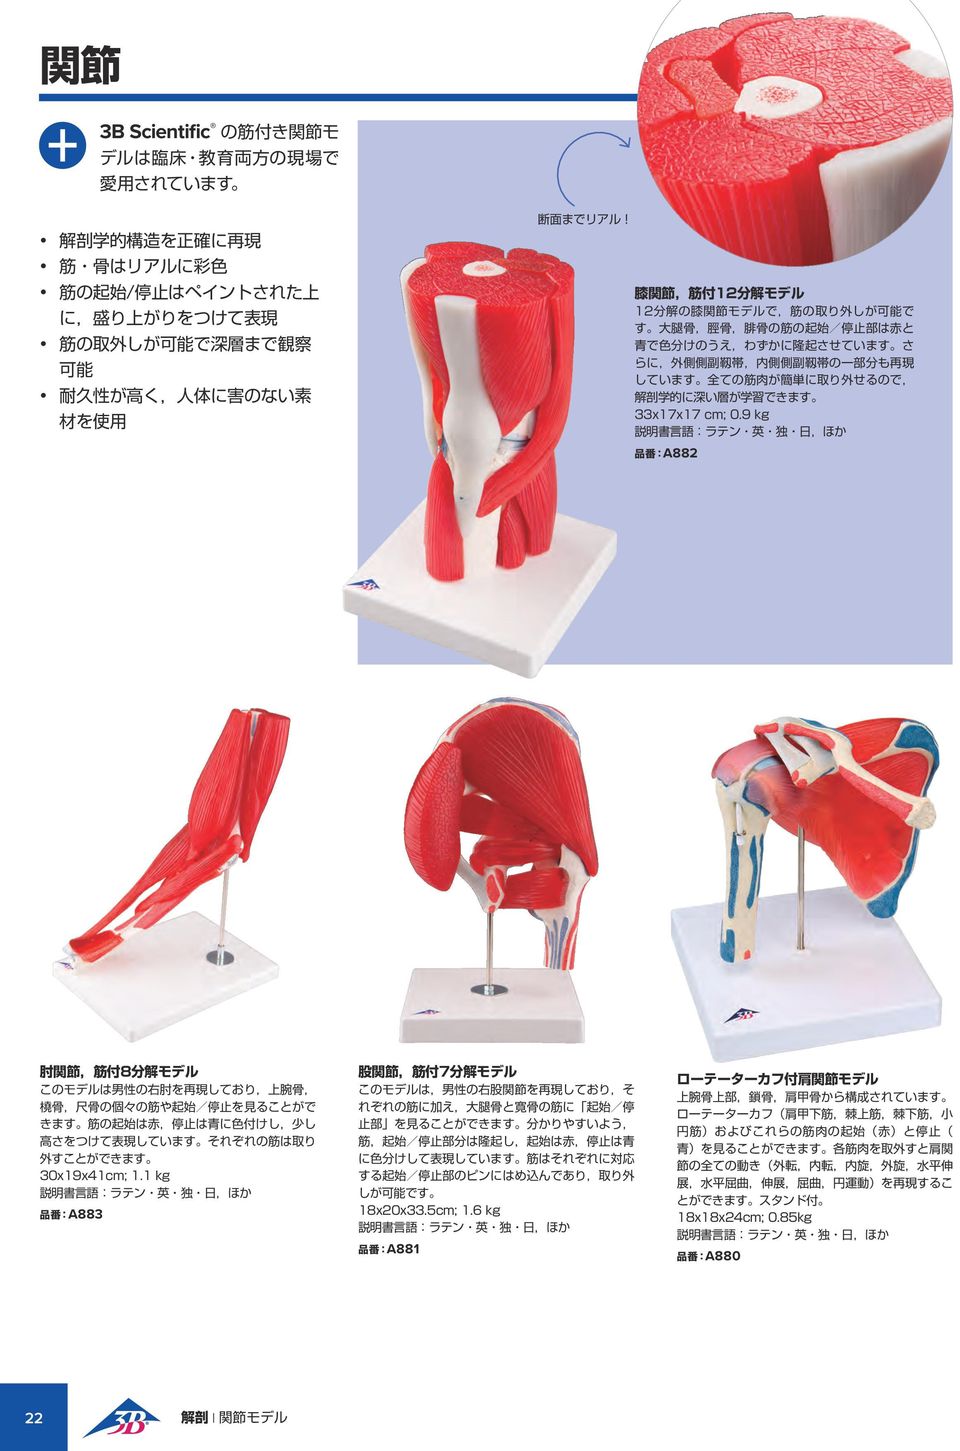 膝 関 節, 筋 付 12 分 解 モデル 12 分 解 の 膝 関 節 モデルで, 筋 の 取 り 外 しが 可 能 で す 大 腿 骨, 脛 骨, 腓 骨 の 筋 の 起 始 / 停 止 部 は 赤 と 青 で 色 分 けのうえ,わずかに 隆 起 させています さ らに, 外 側 側 副 靱 帯, 内 側 側 副 靱 帯 の 一 部 分 も 再 現 しています 全 ての 筋 肉 が 簡 単